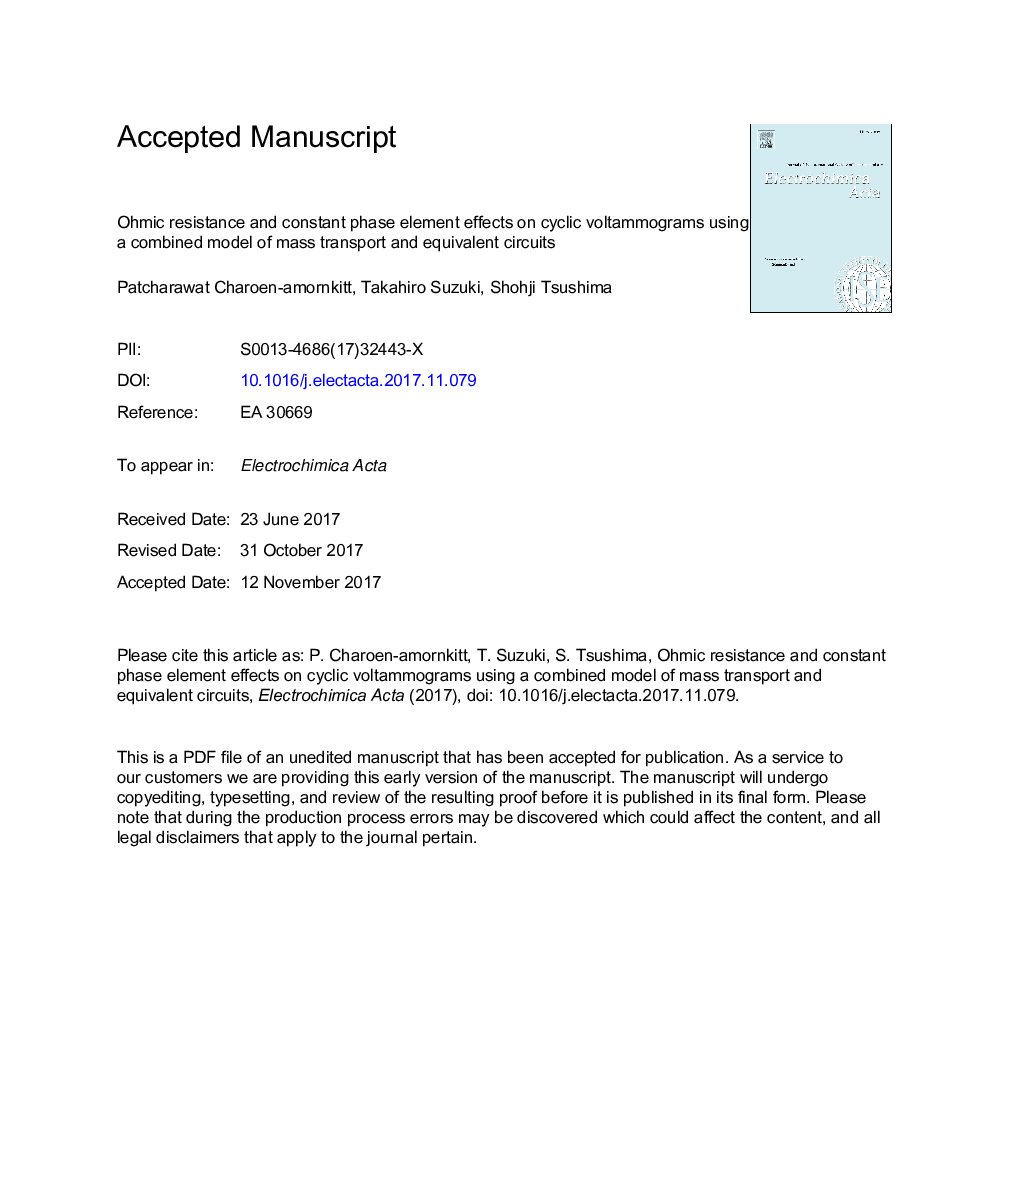 مقاومت اویمیک و عنصر ثابت فاز ثابت بر روی ولتاموگرام های سیکل با استفاده از یک مدل ترکیبی حمل و نقل جرم و مدارهای معادل آن 